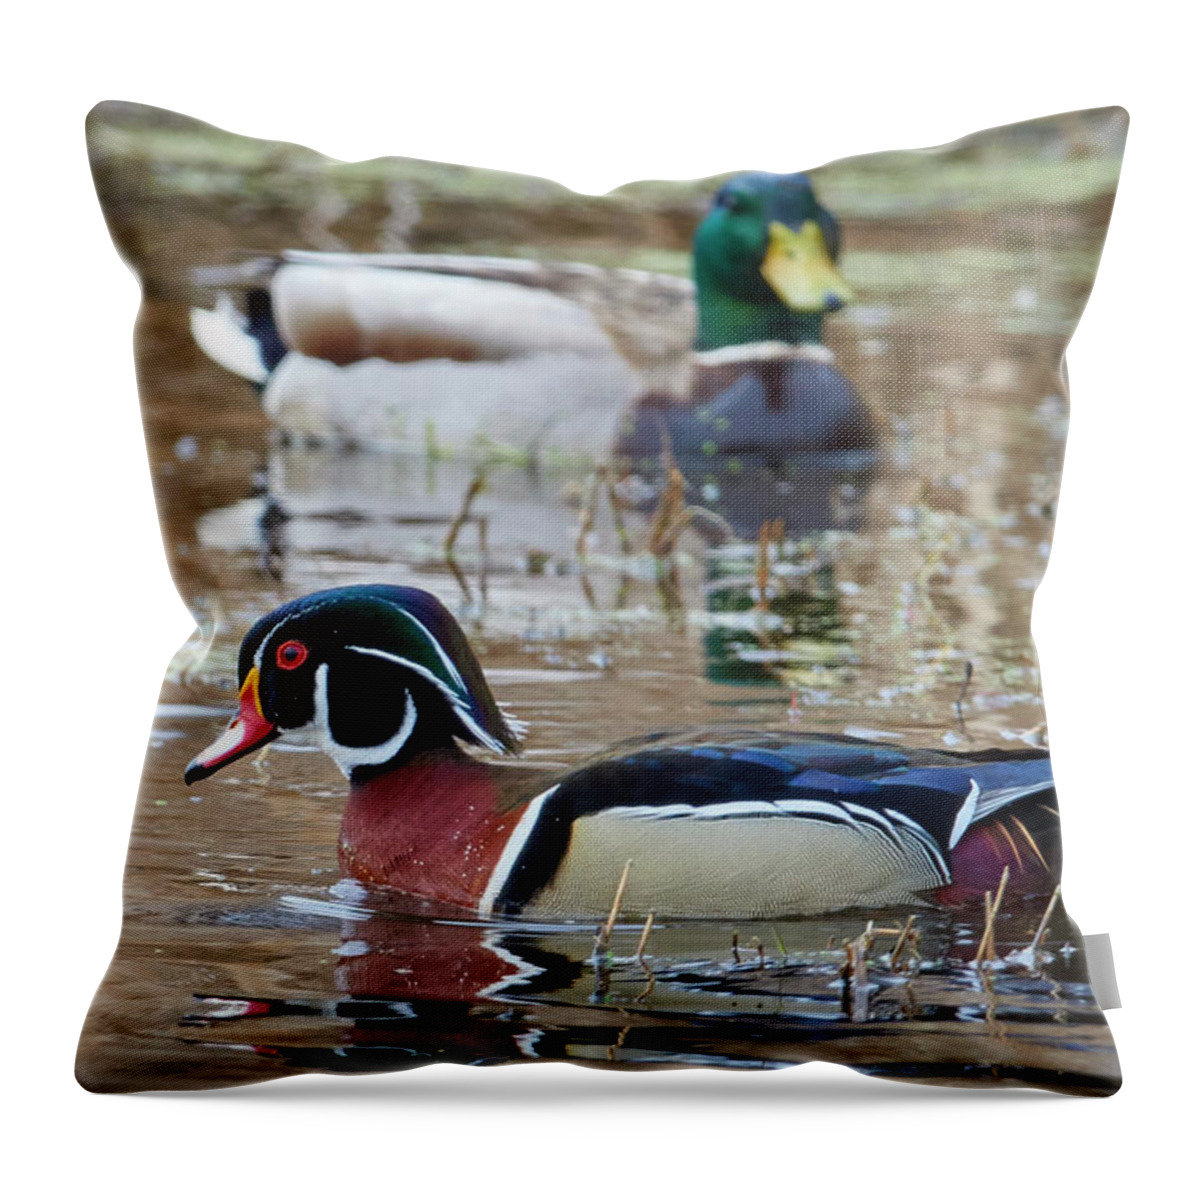 Duck Throw Pillow featuring the photograph Mallard Watching Wood duck by Paul Freidlund